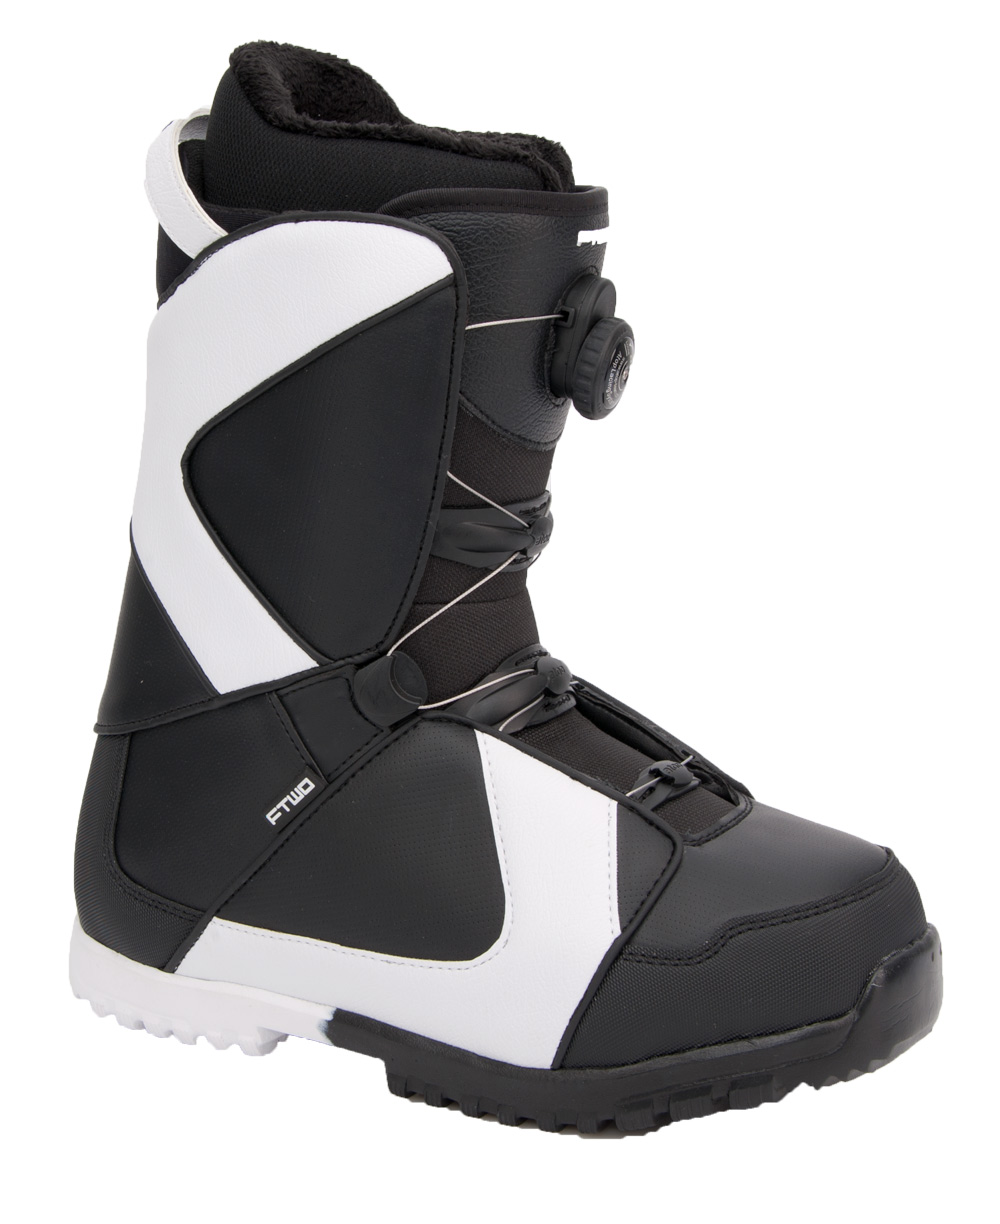 Ботинки сноубордические F2 Air размер 27,5 black/black  фото 